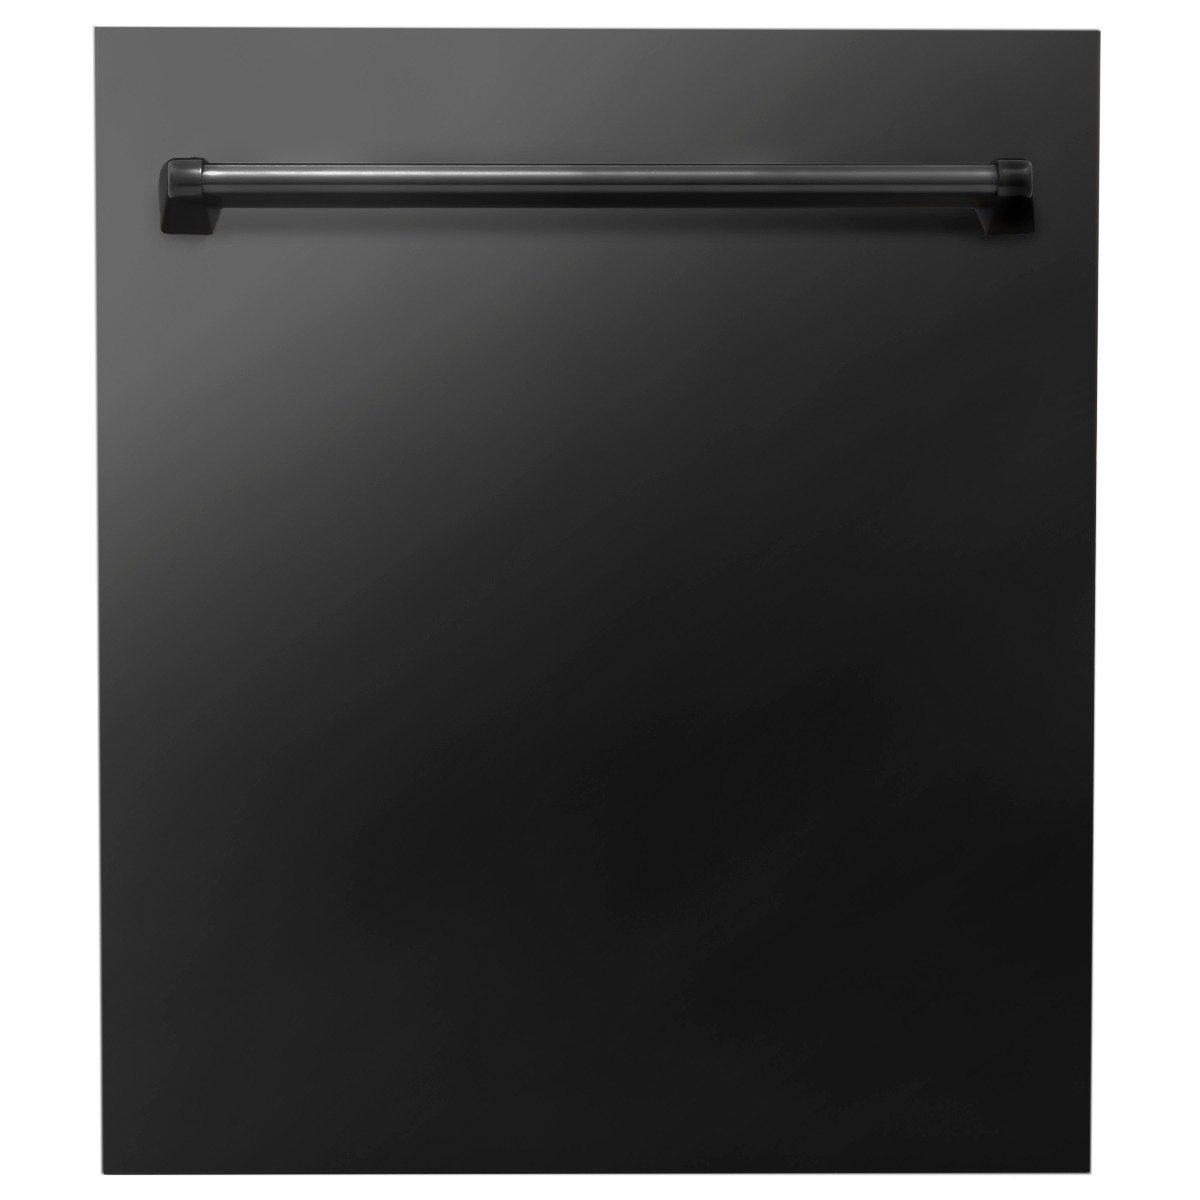 ZLINE Appliance Package - 36 in. Gas Range, Range Hood, Microwave Drawer - Black Stainless Steel, 3KP-RGBRBRH36-MW